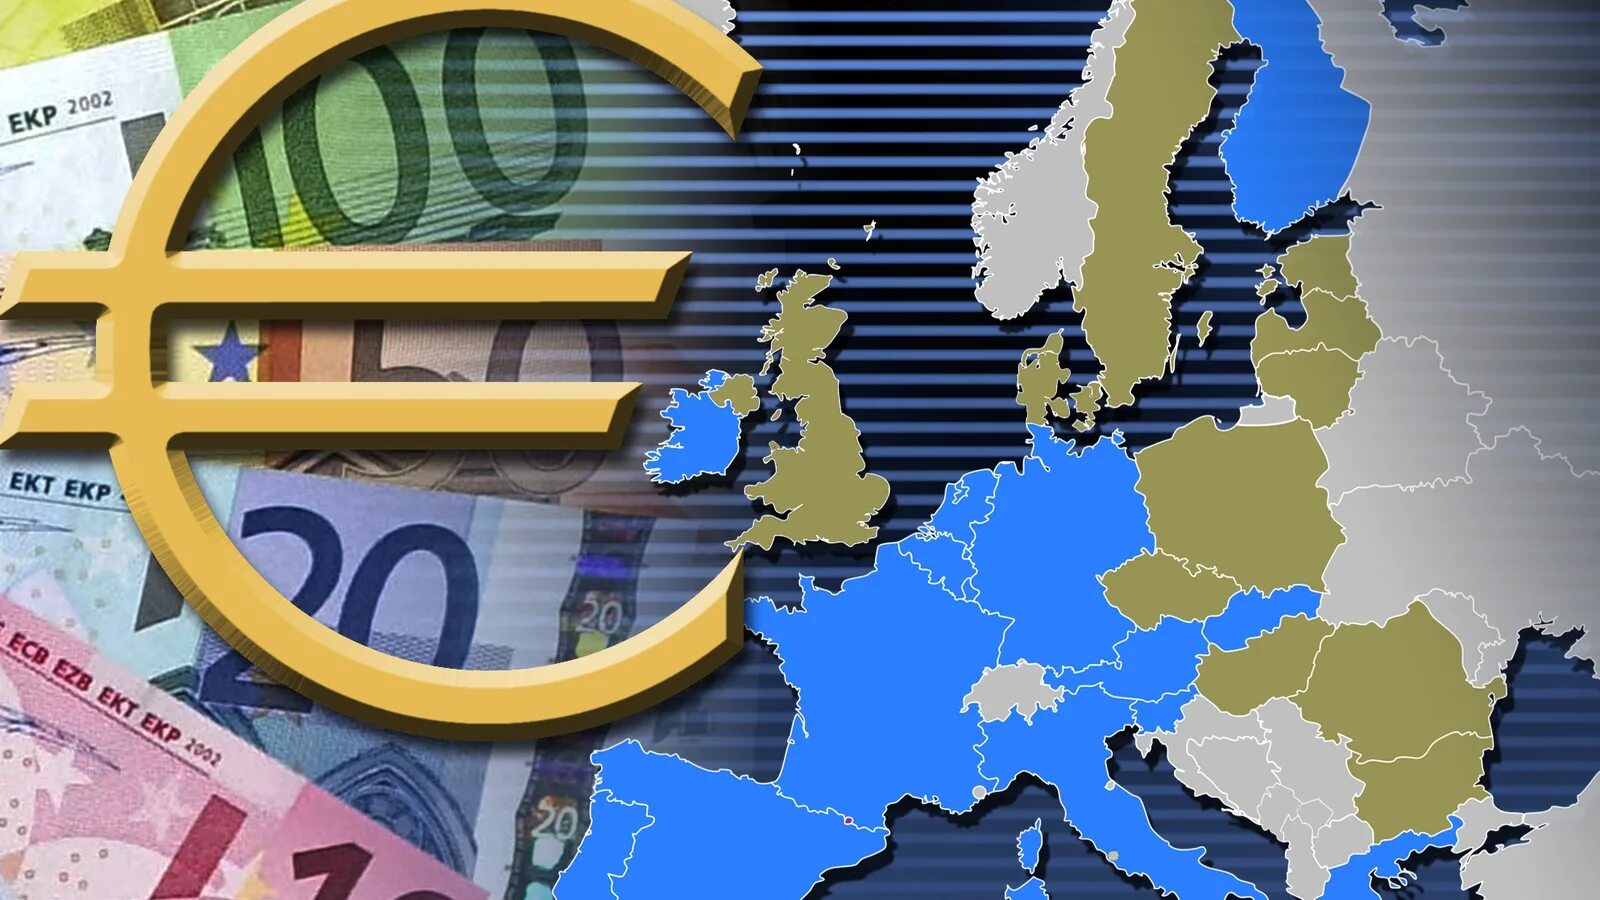 Деньги многих стран европы. Европейские государства еврозоны. Страны использующие евро. Европейская экономика. Валюты стран Евросоюза.